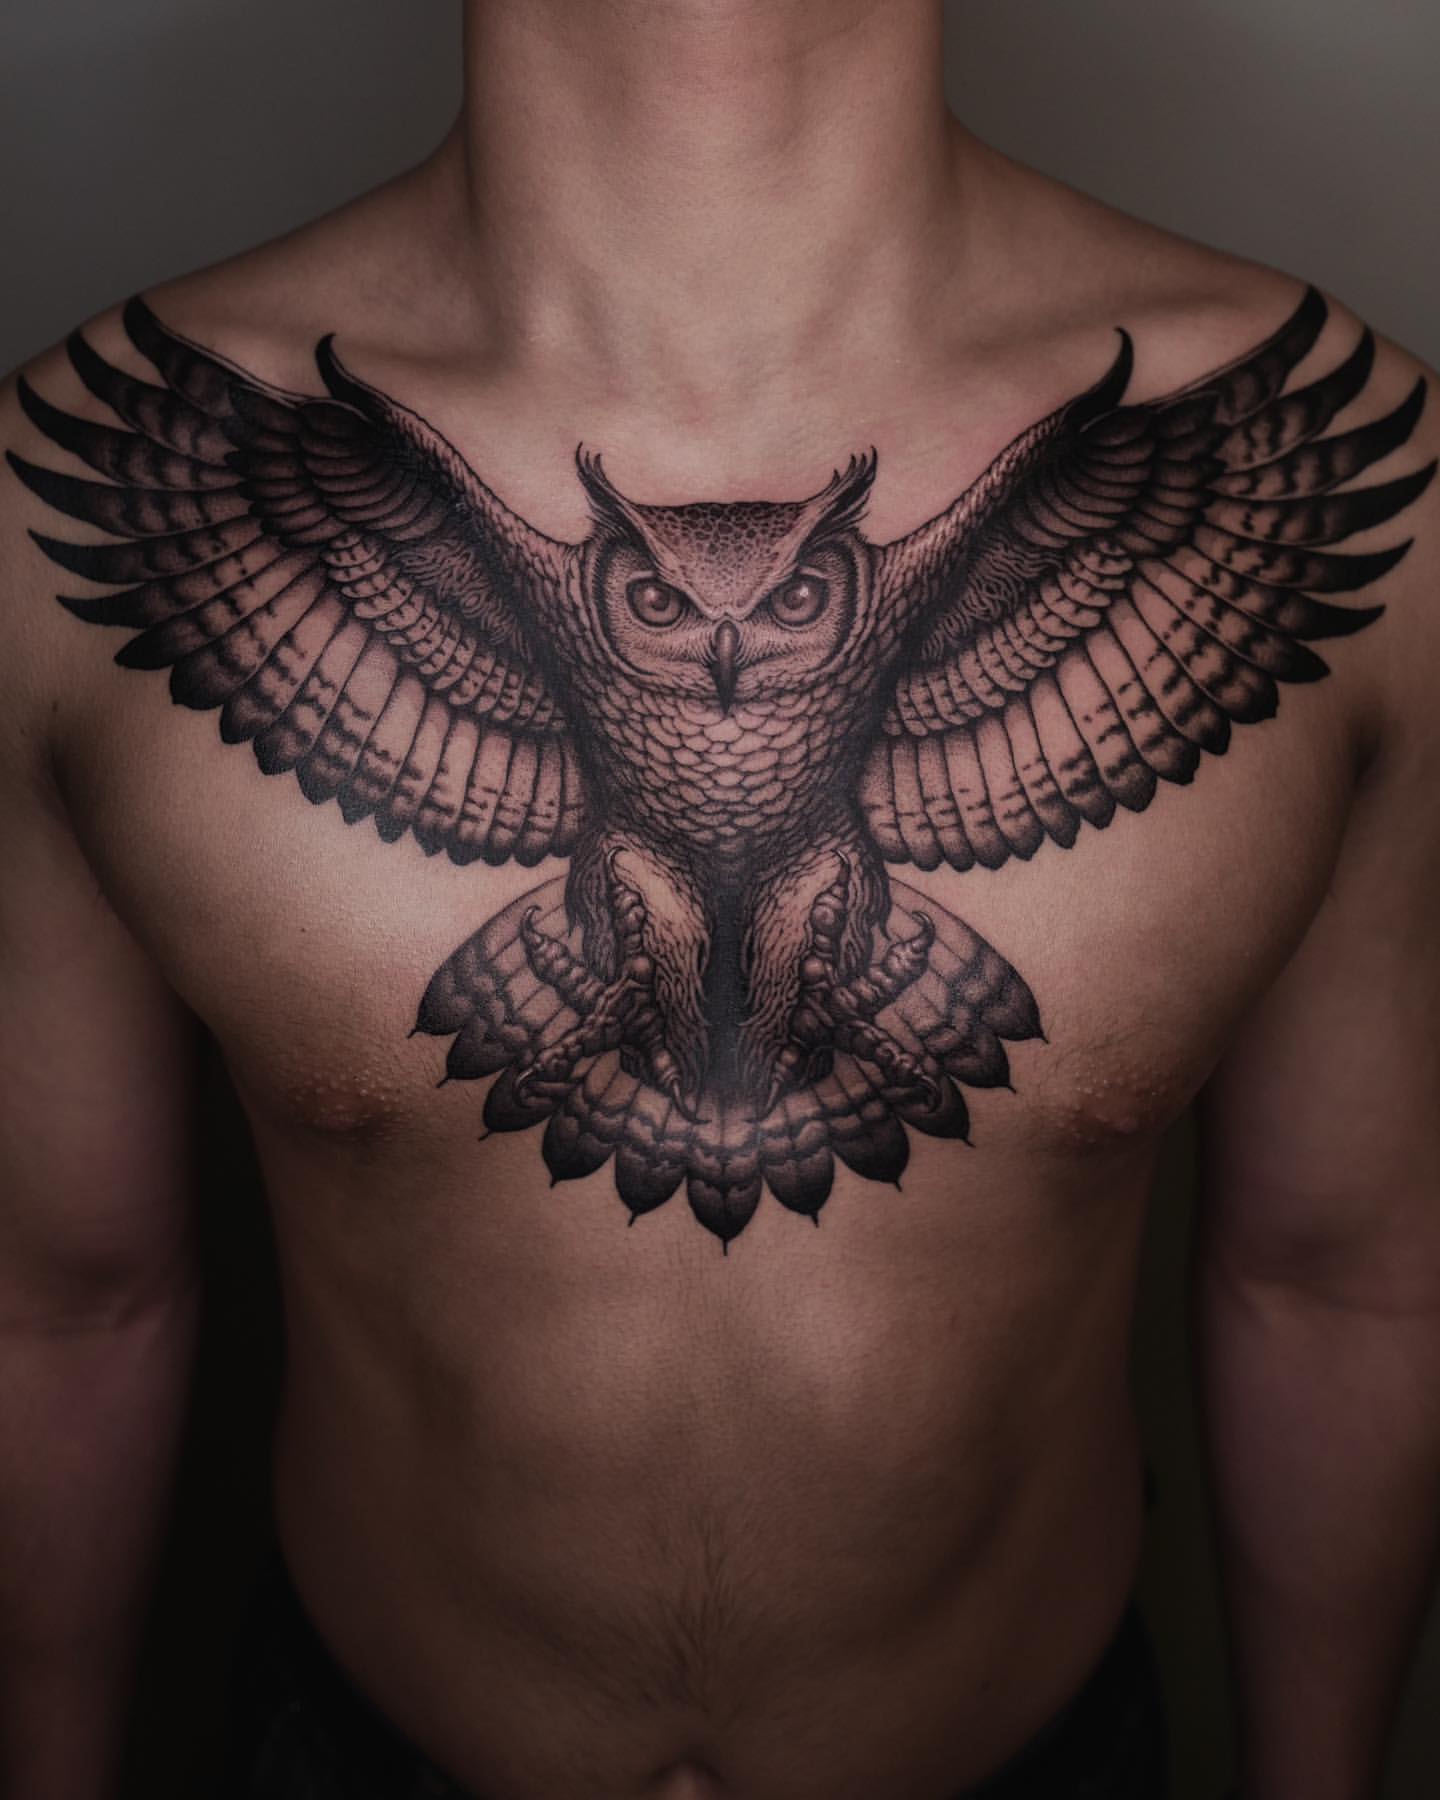 Chest owl tattoo by Momori Tattoo | Post 14892